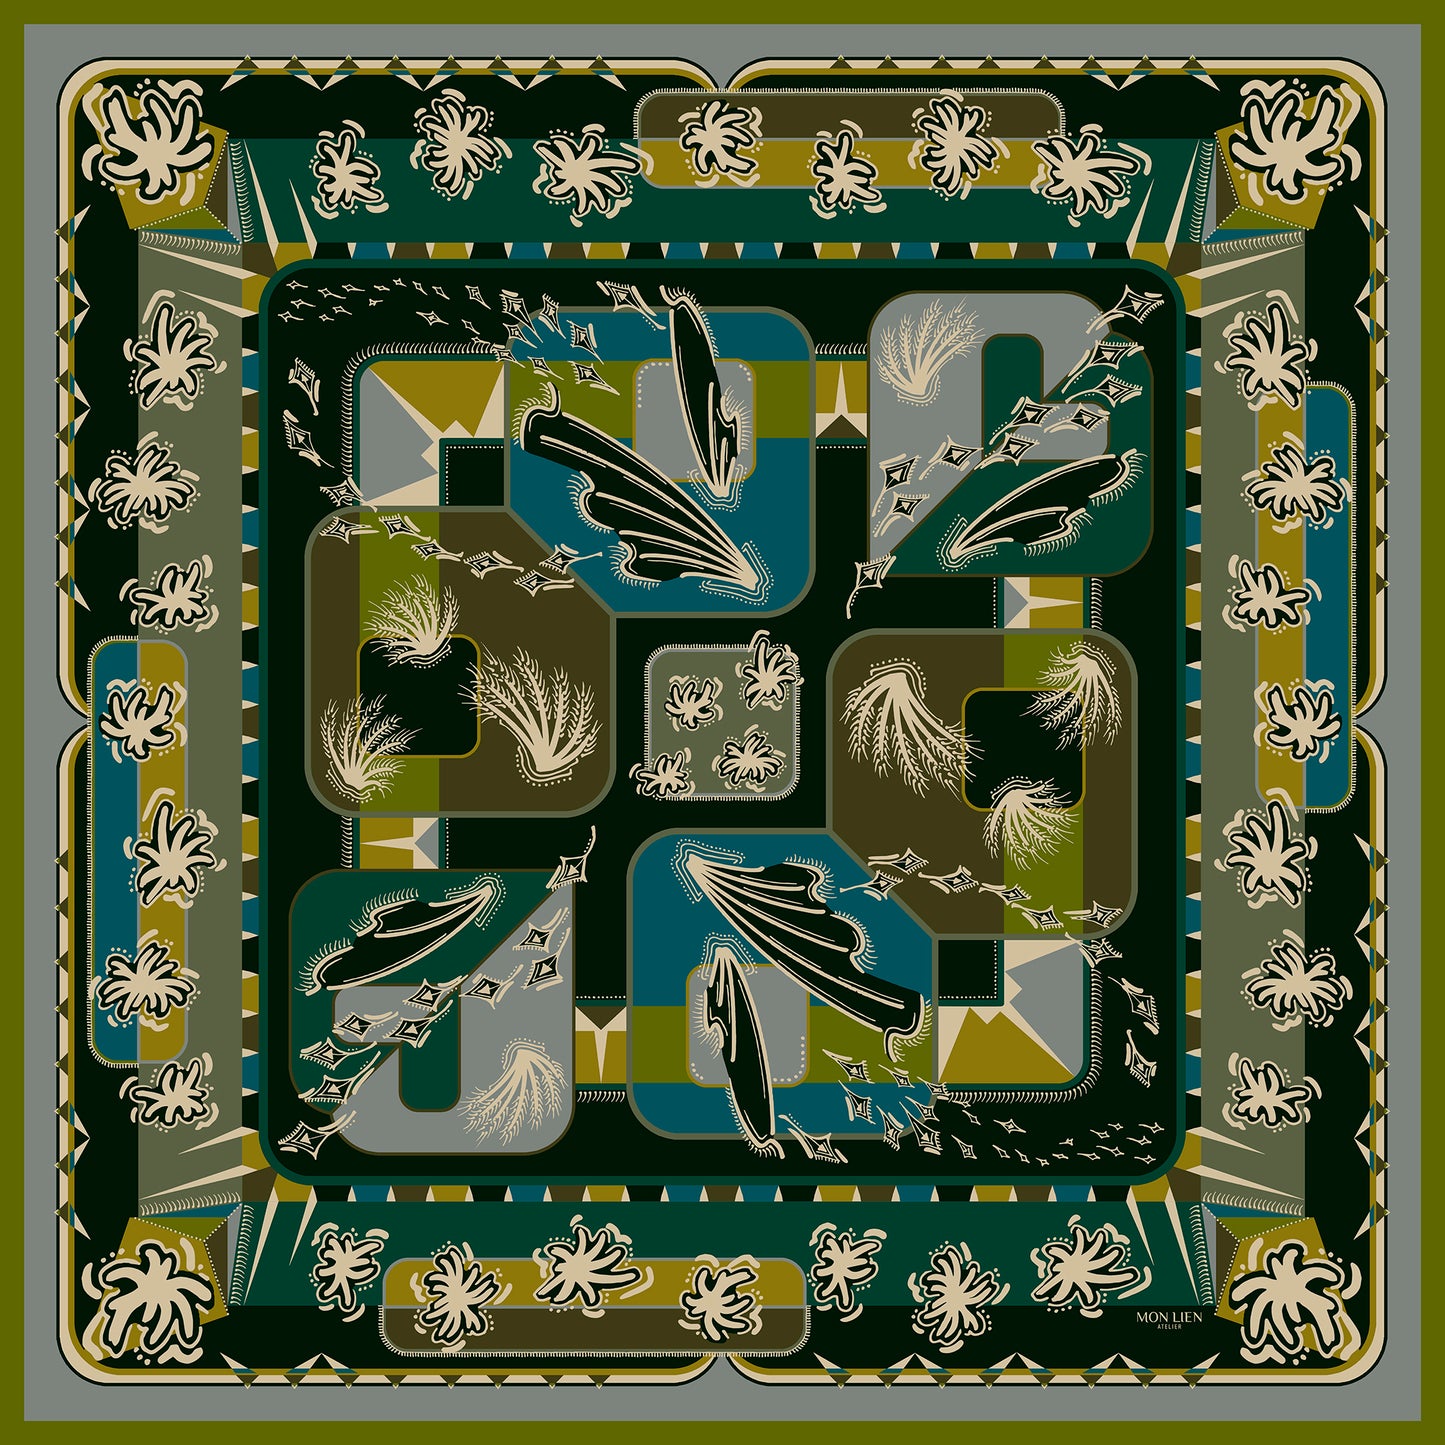 foulard carré in twill di seta vista intera con stampa fiori, ali, geometrie di colore terra, avorio, verde, ocra, ottanio